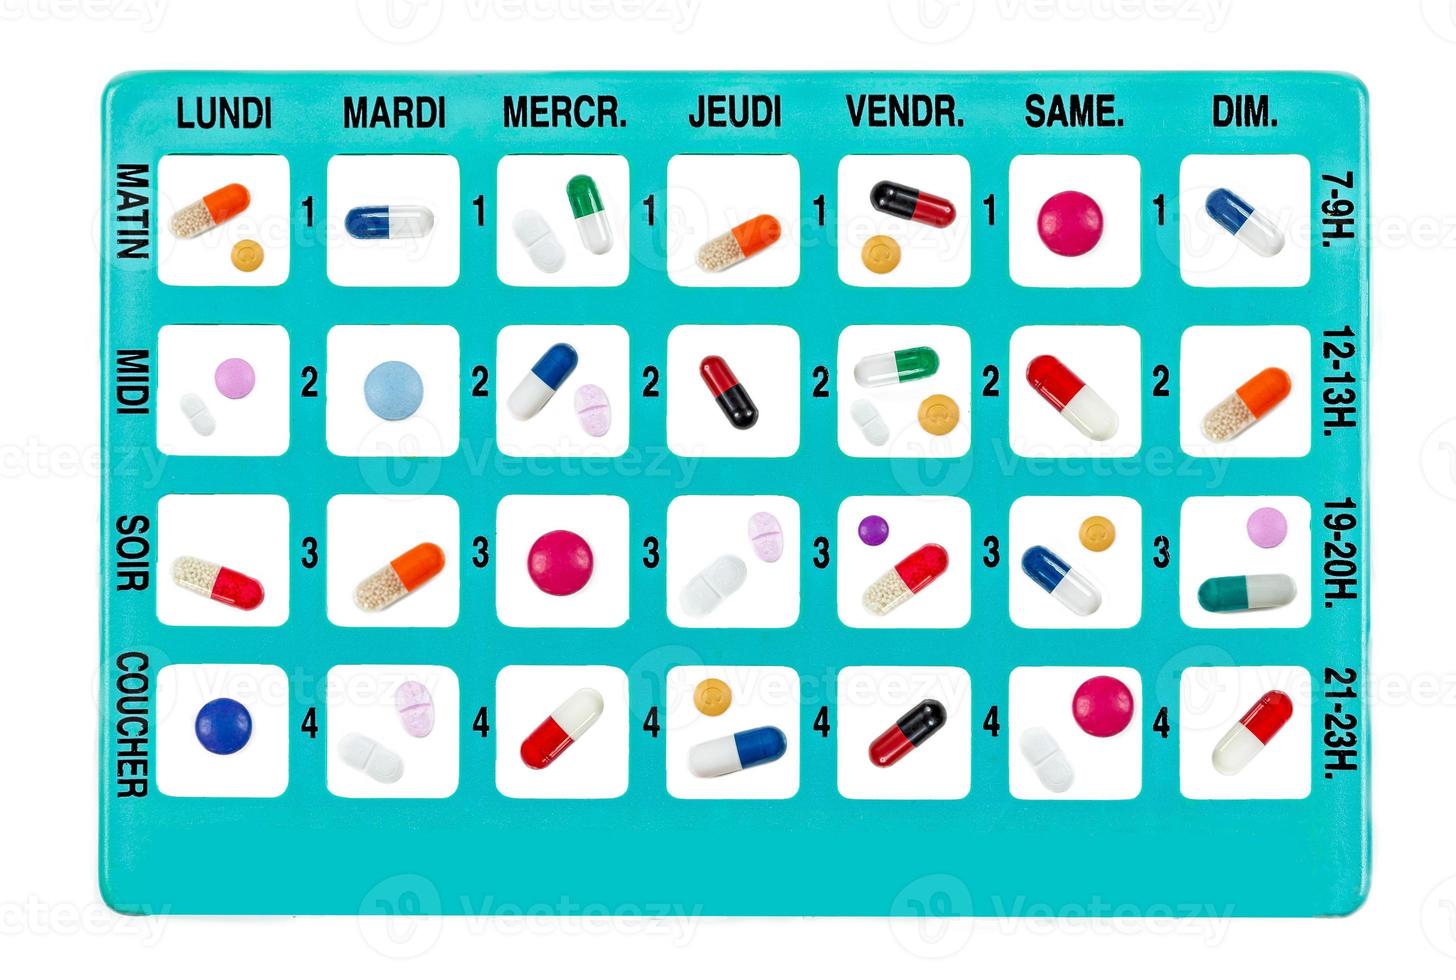 wöchentliche medikamente in einer pillendose für den täglichen gebrauch auf französisch foto